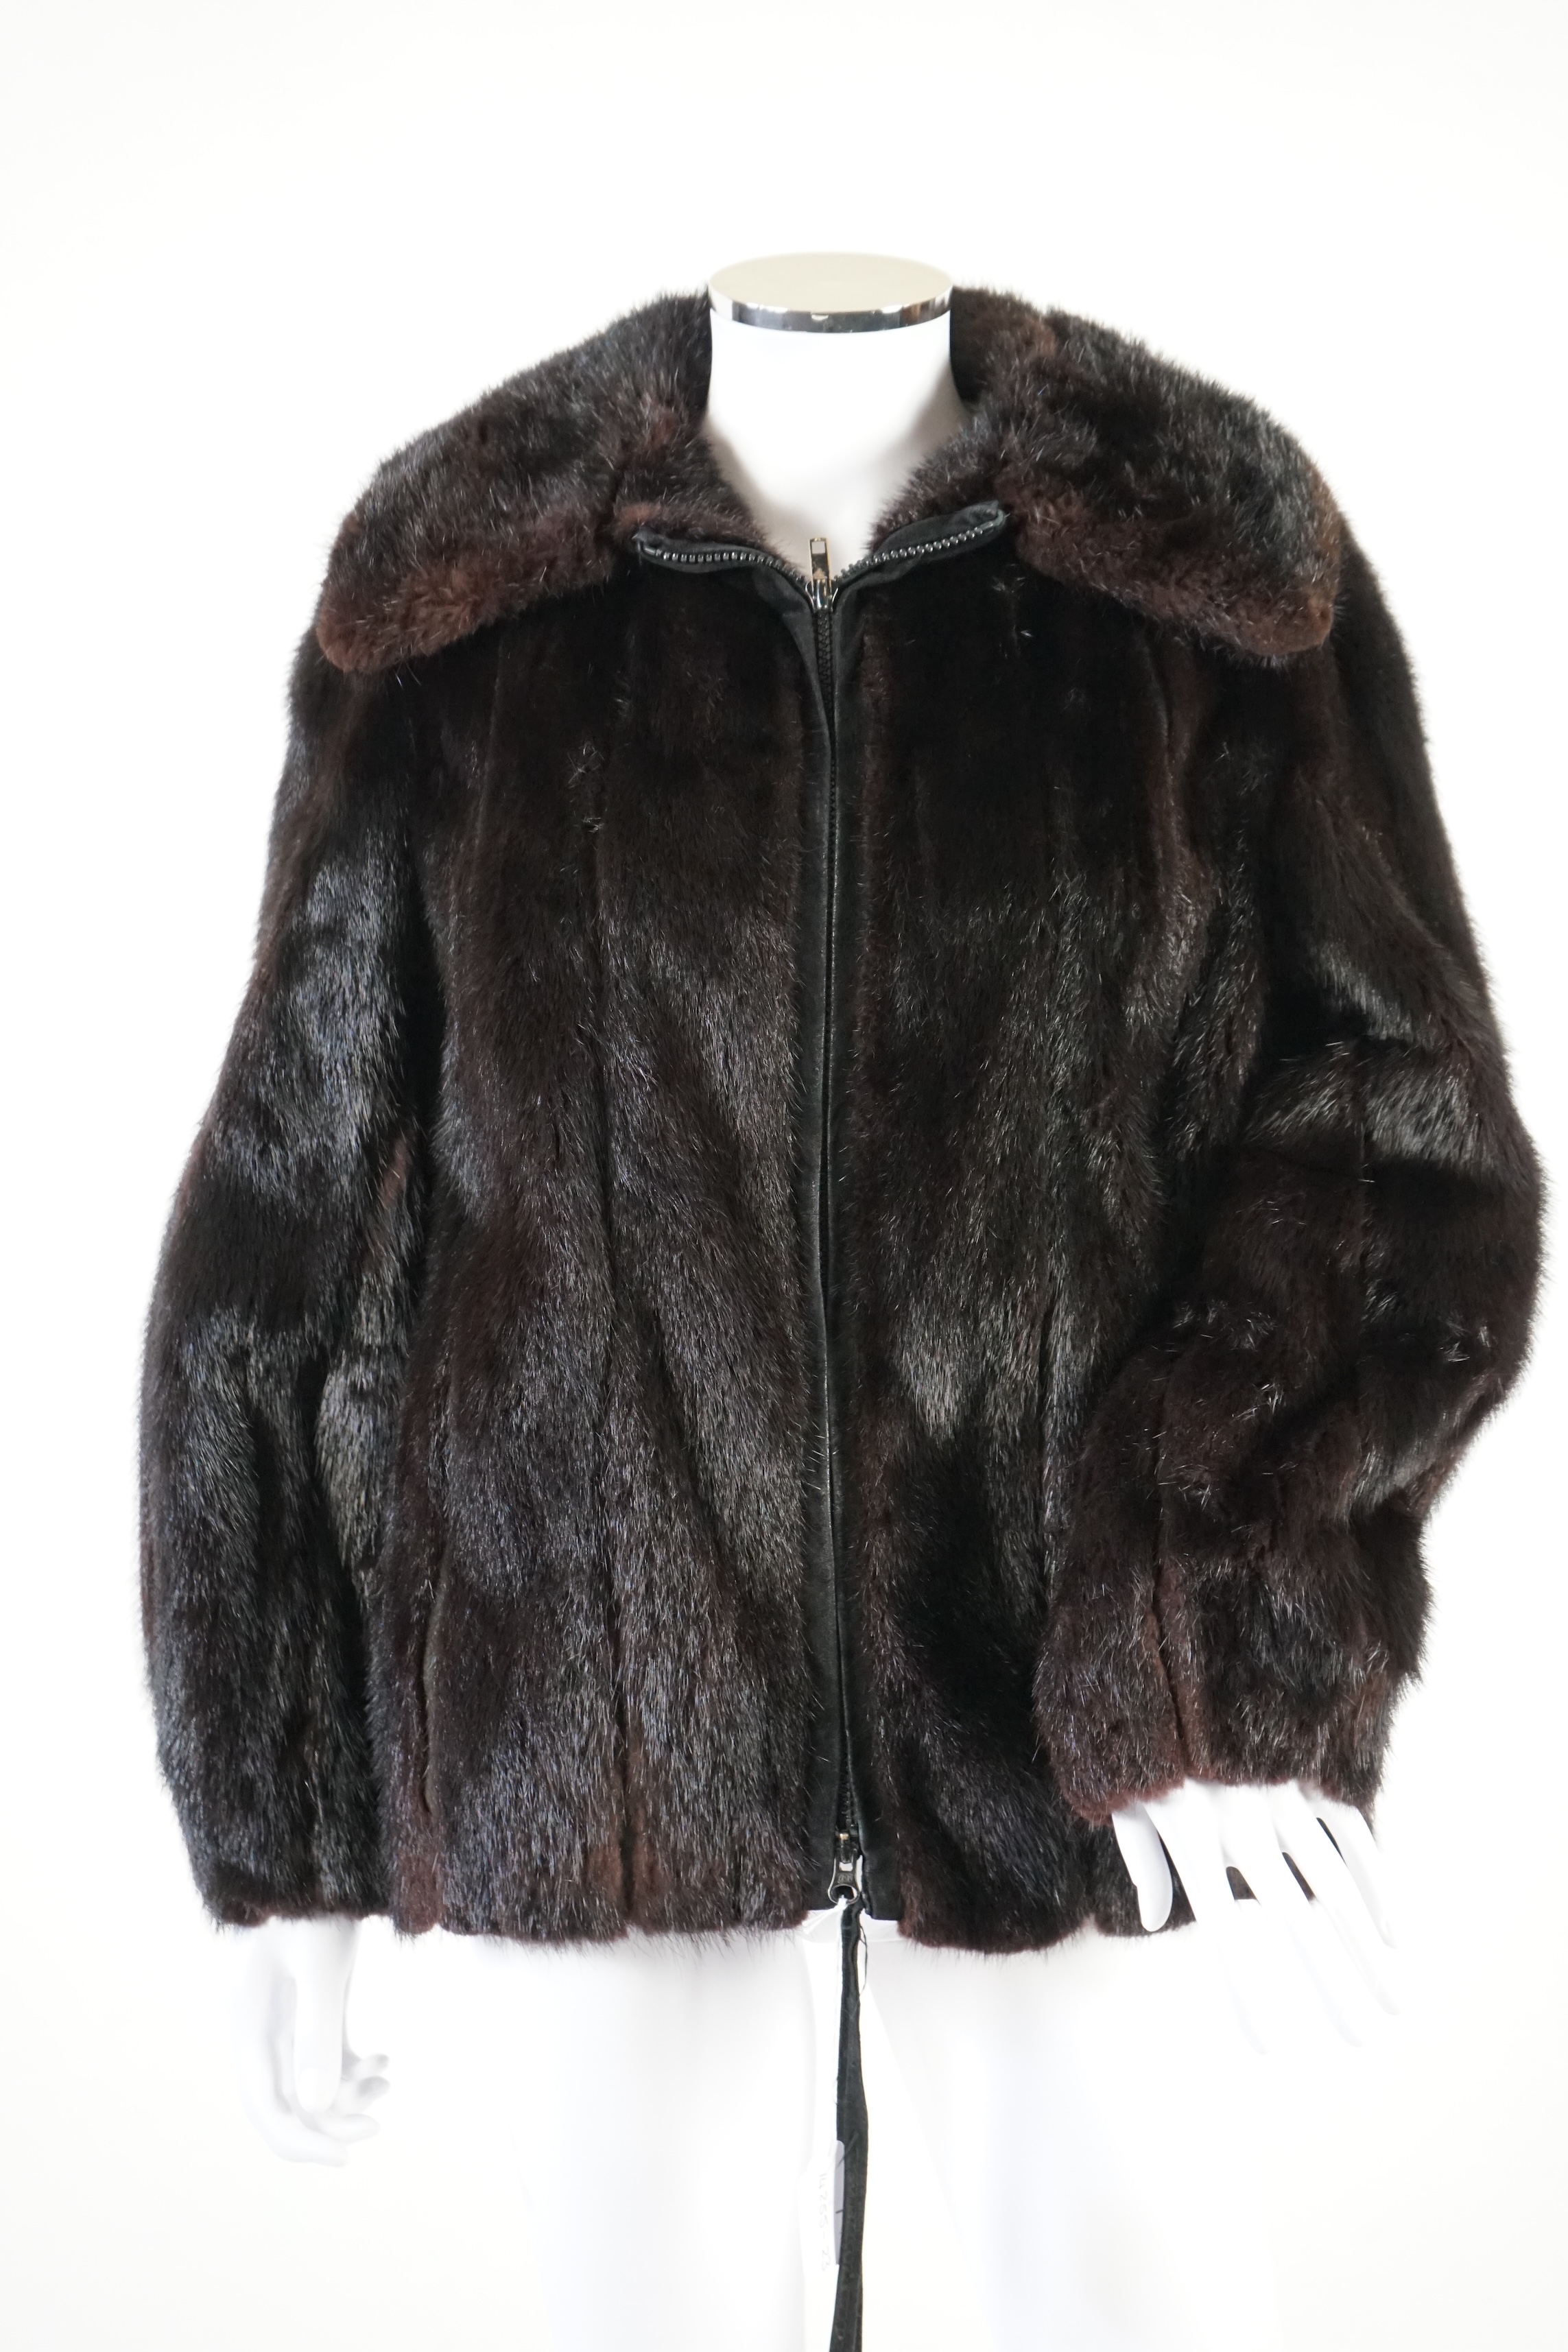 A vintage Christian Dior fur jacket.